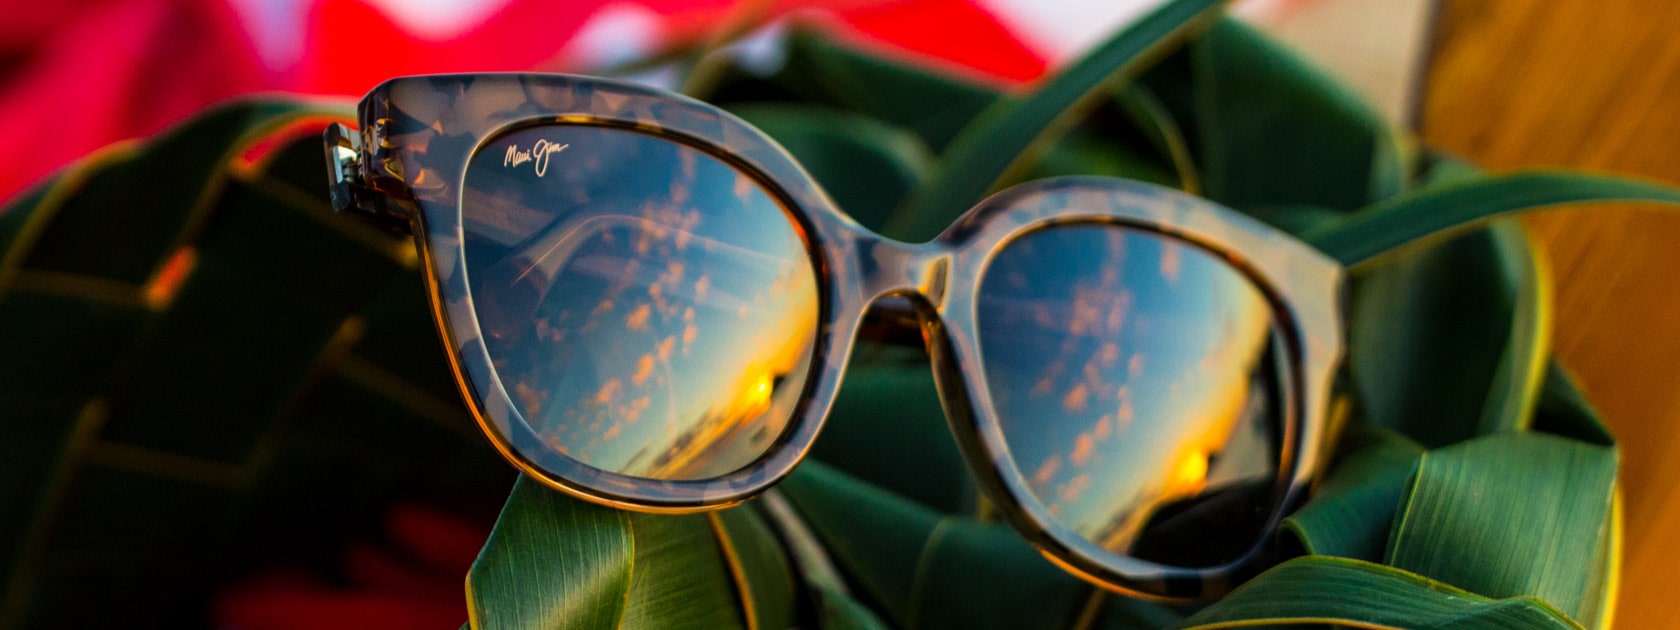 occhiali da sole con montatura tartaruga e riflessi di cielo sulle lenti mostrati su foglie verdi